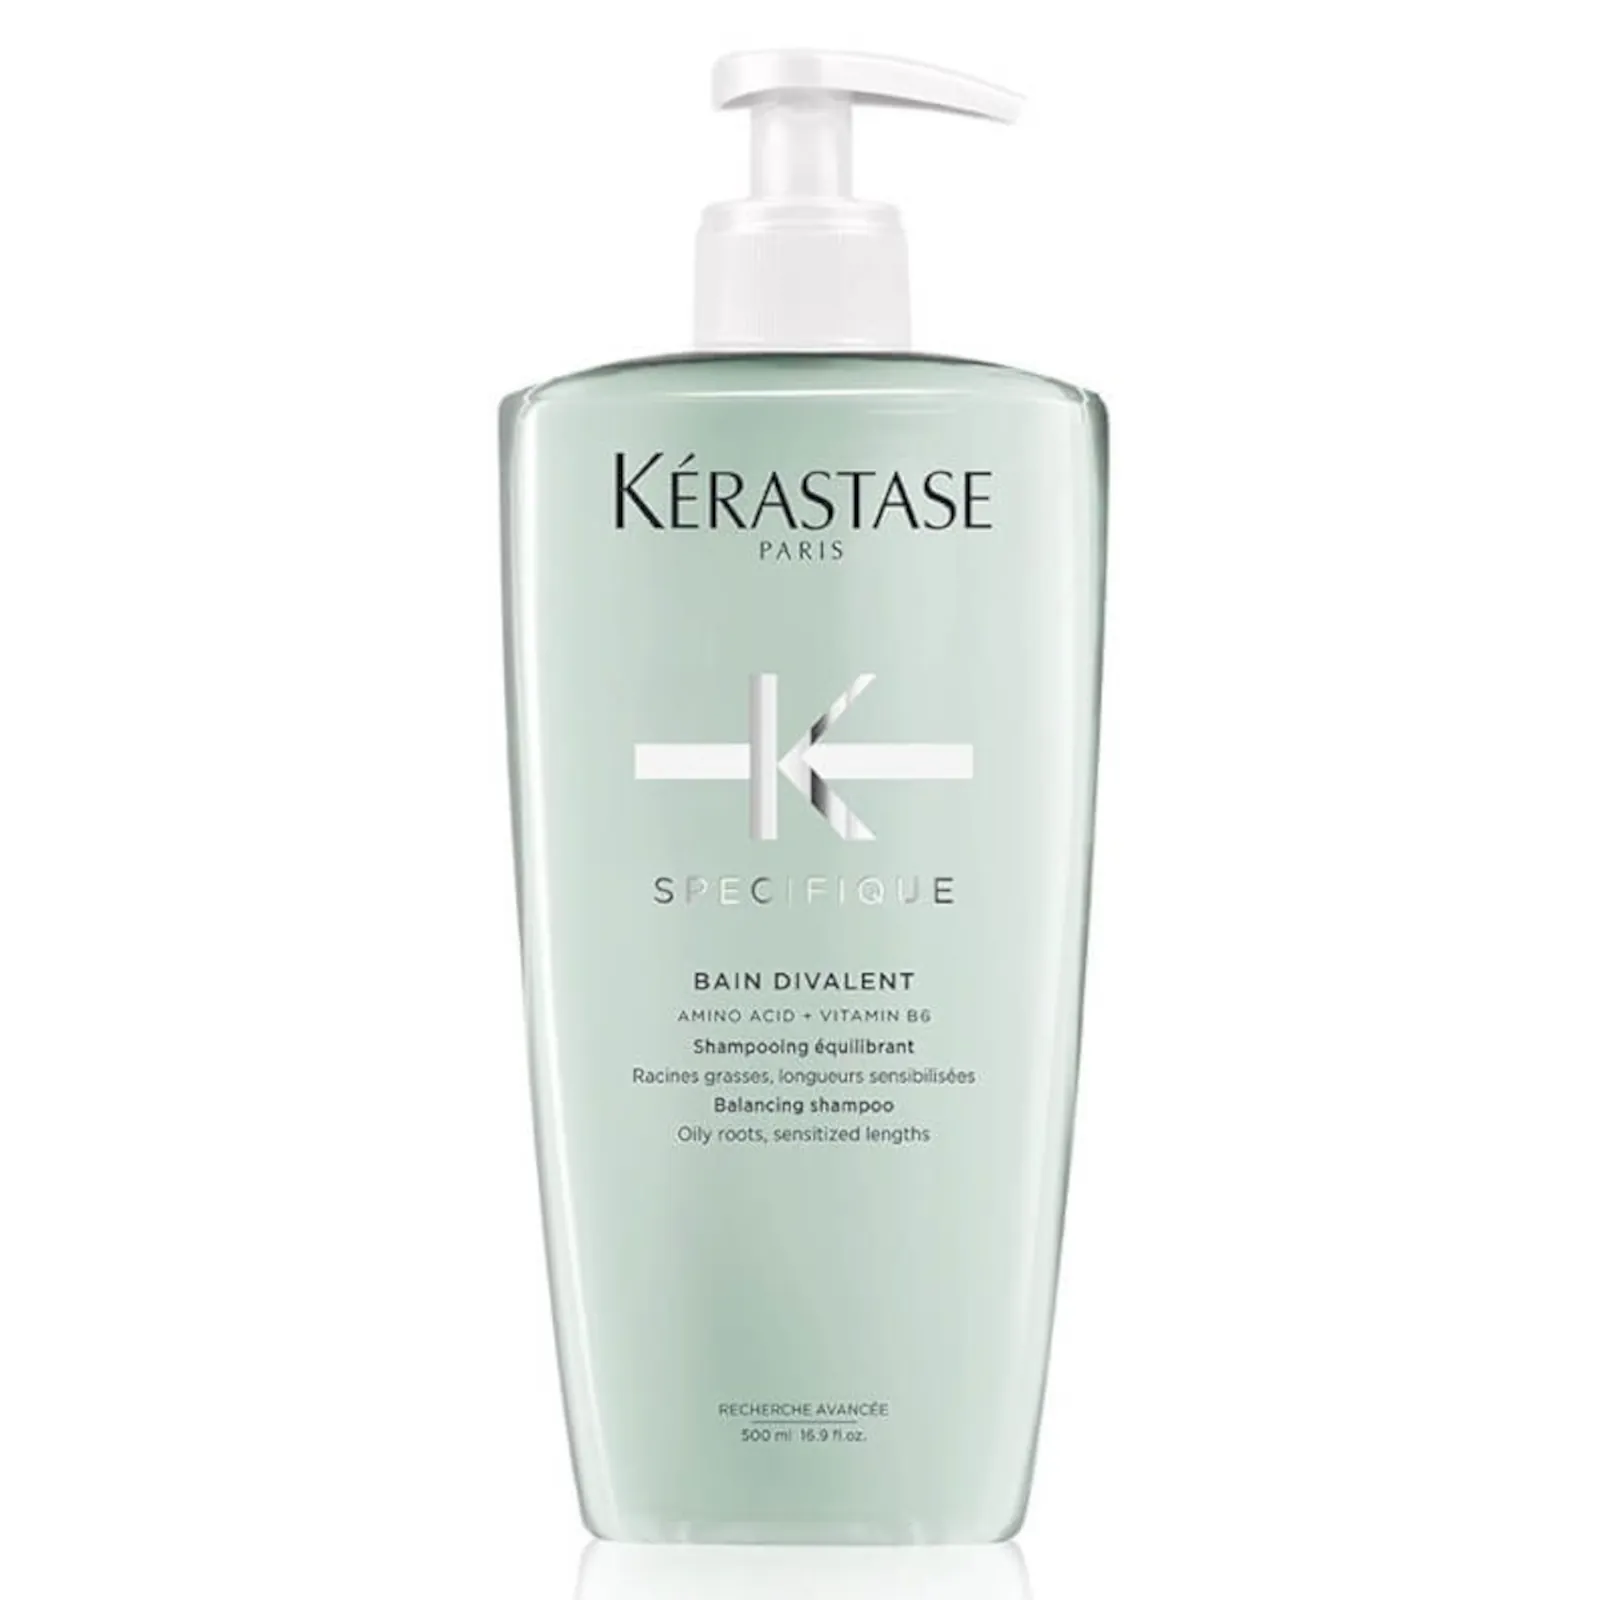 Kérastase specifique bain divalent balacing shampoo 16.9fl.oz -